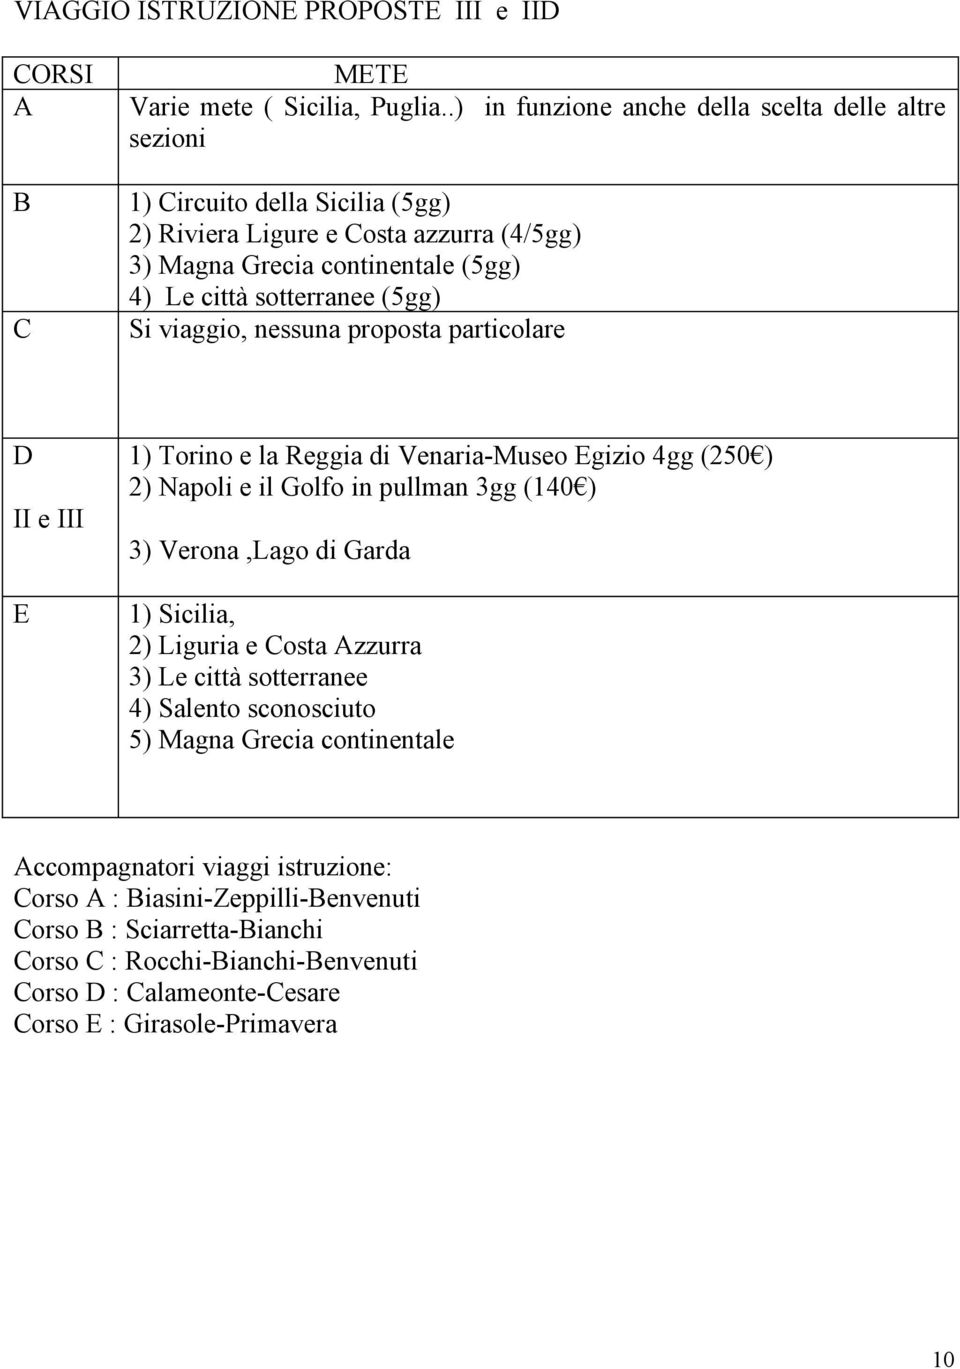 (5gg) Si viaggio, nessuna proposta particolare D II e III E 1) Torino e la Reggia di Venaria-Museo Egizio 4gg (250 ) 2) Napoli e il Golfo in pullman 3gg (140 ) 3) Verona,Lago di Garda 1)